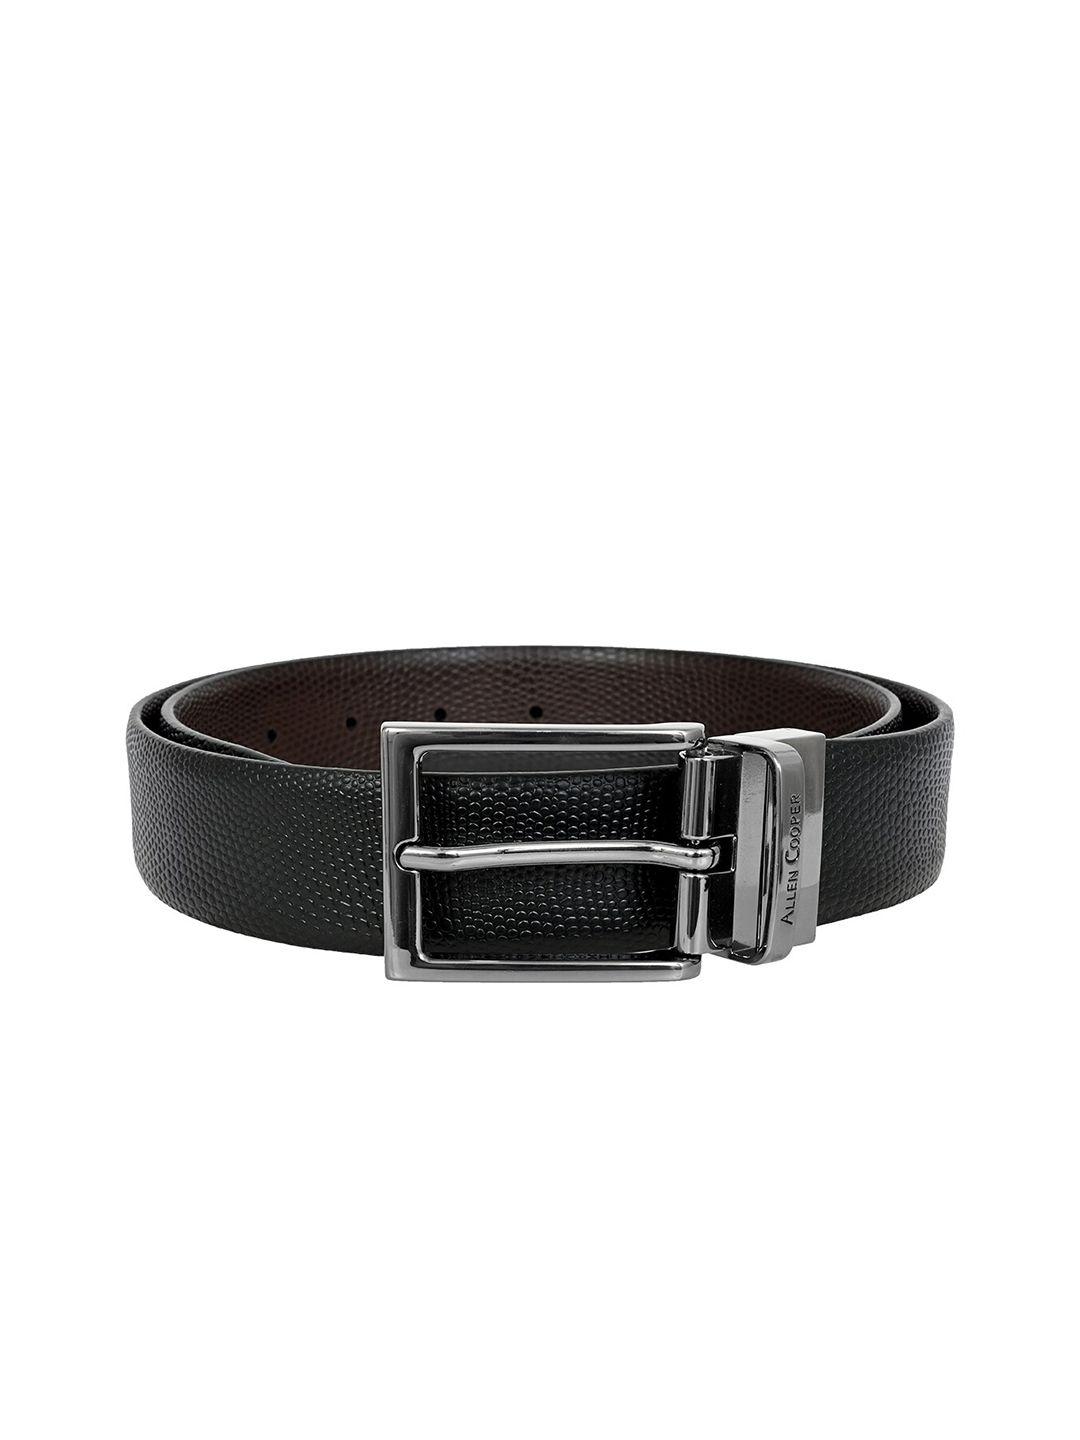 allen-cooper-men-textured-leather-reversible-formal-belt